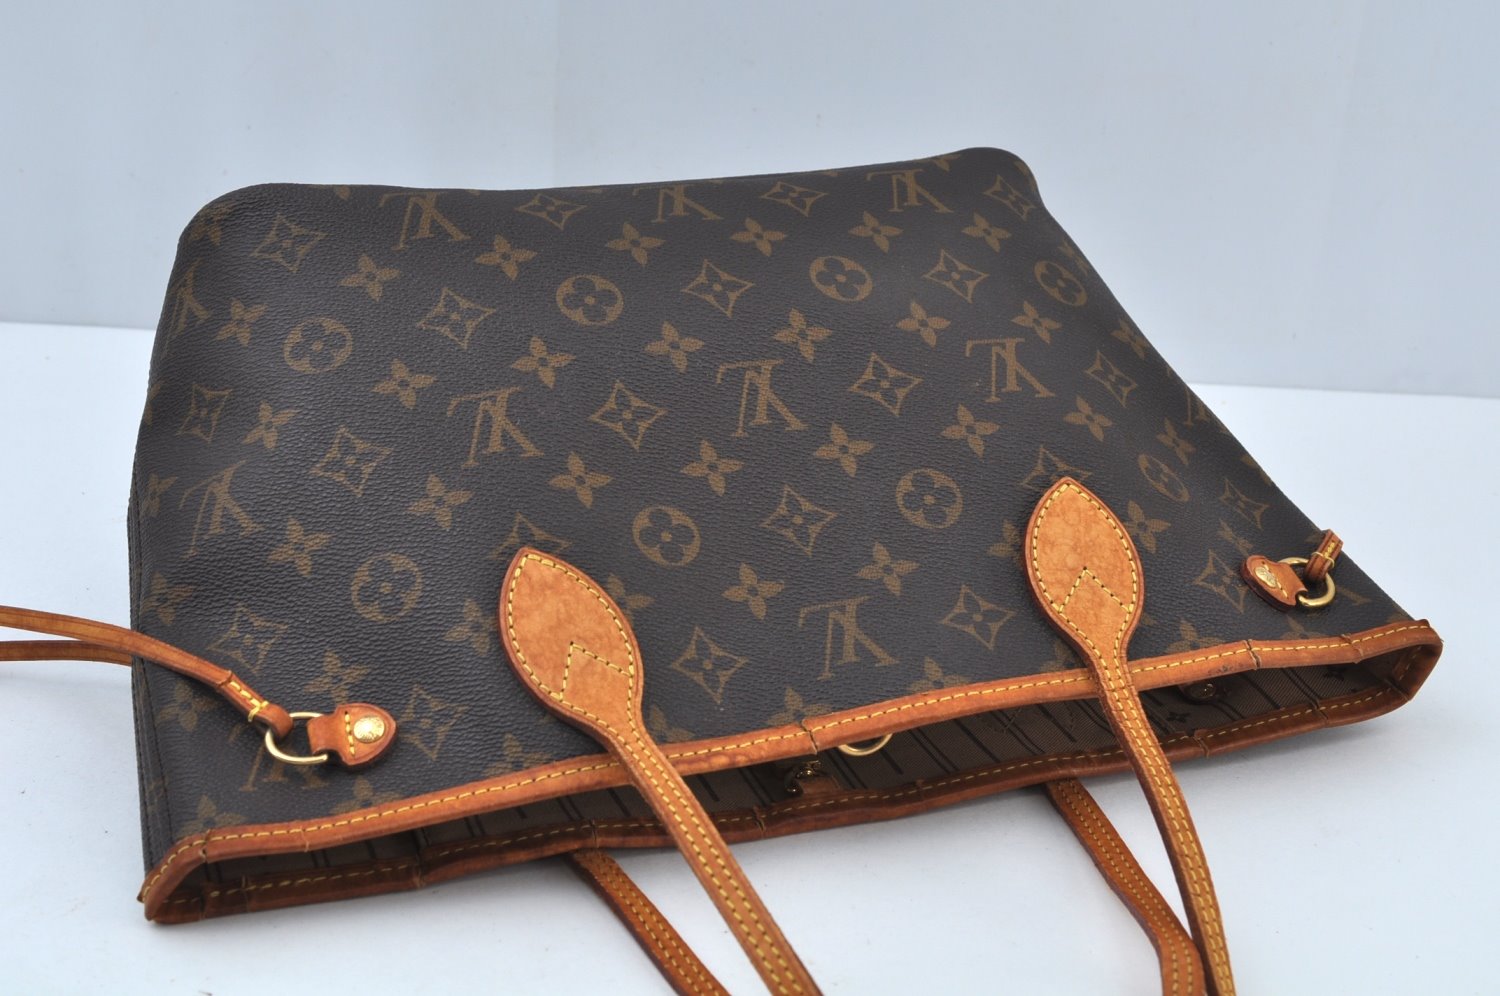 Authentic Louis Vuitton Monogram Neverfull PM Shoulder Tote Bag M40155 LV K9739